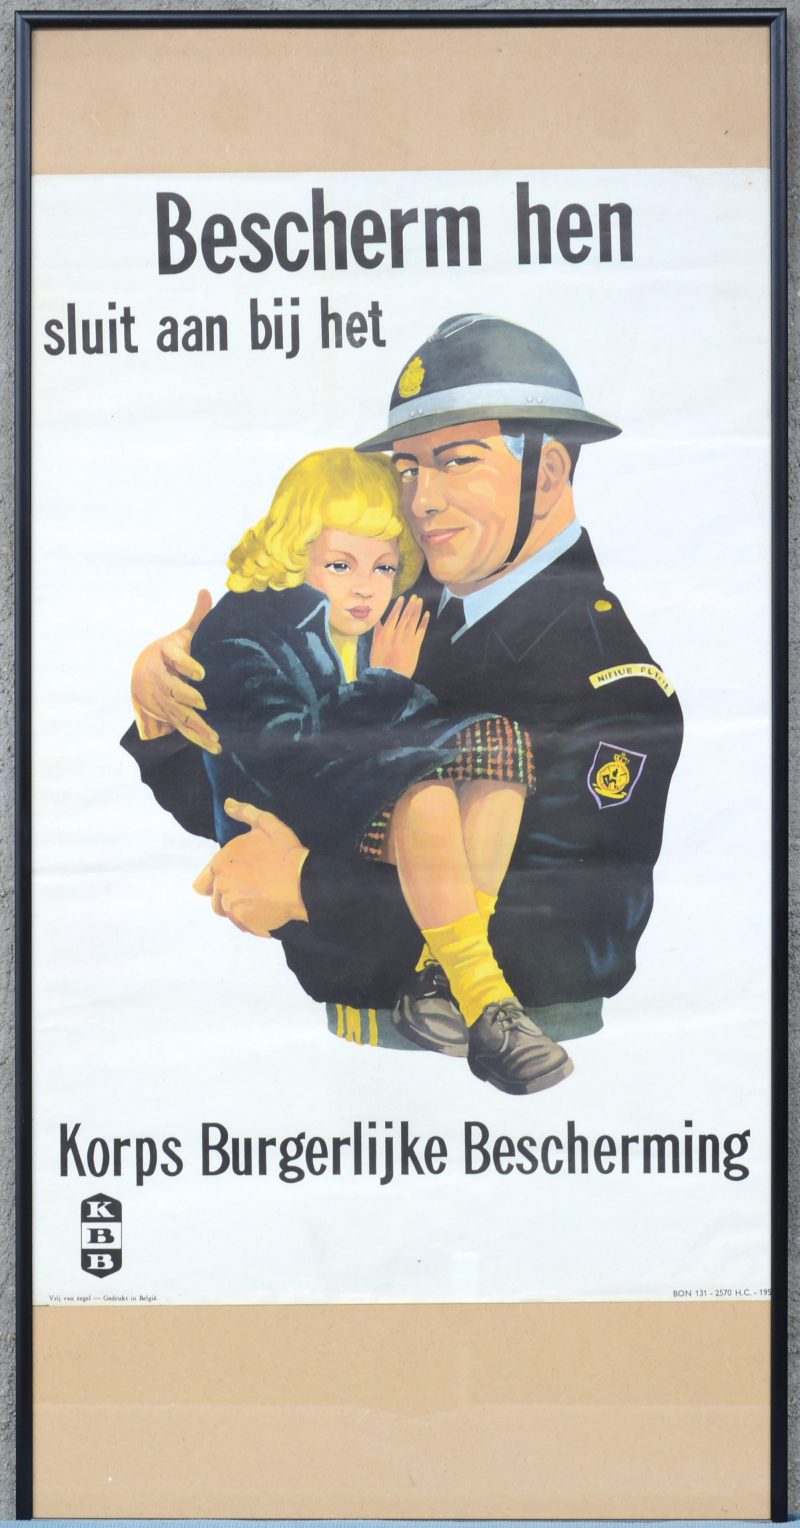 Een originele affiche van de Burger bescherming.